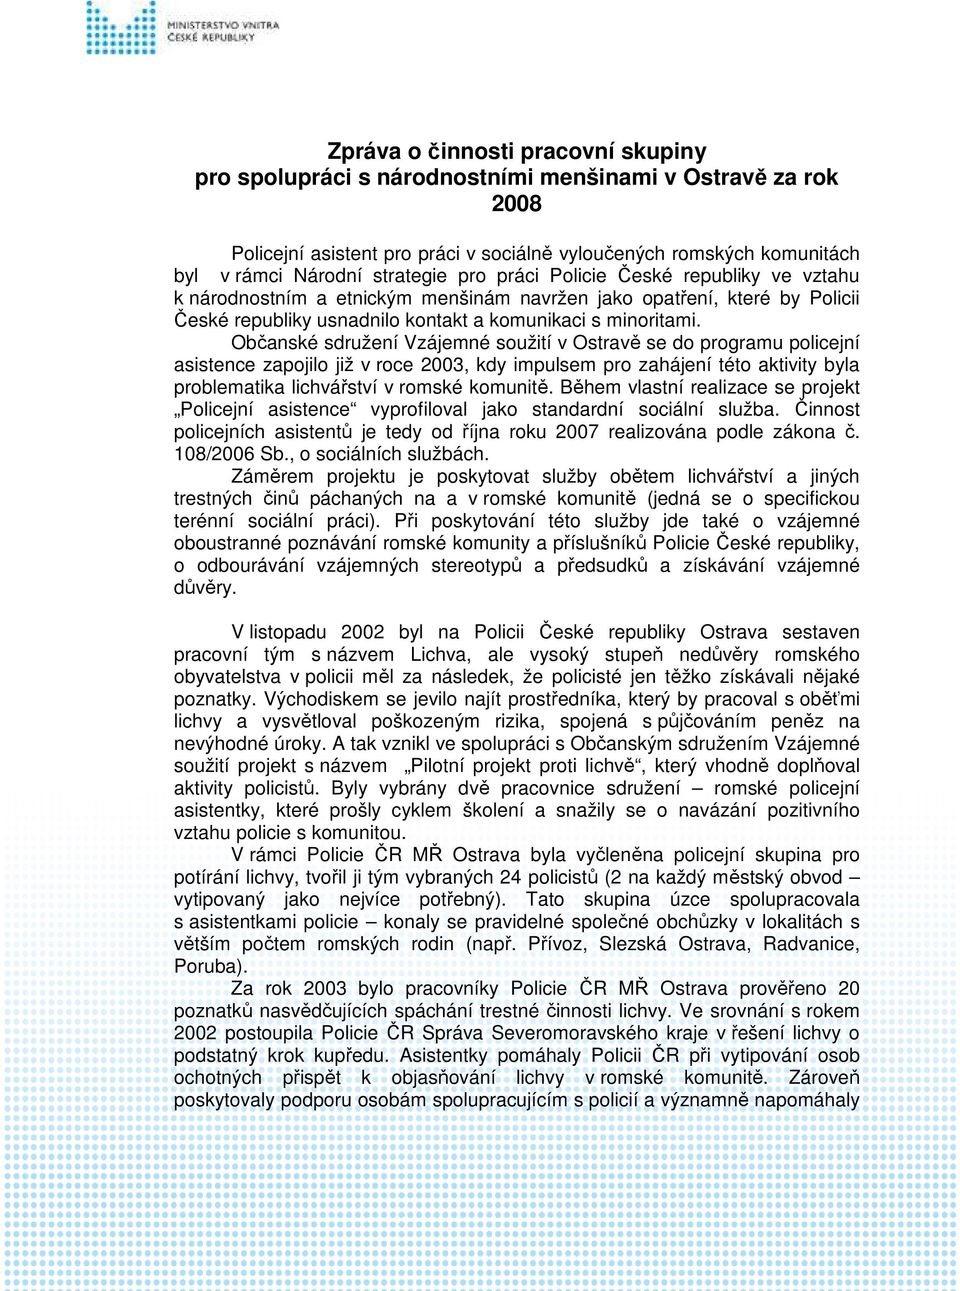 Občanské sdružení Vzájemné soužití v Ostravě se do programu policejní asistence zapojilo již v roce 2003, kdy impulsem pro zahájení této aktivity byla problematika lichvářství v romské komunitě.